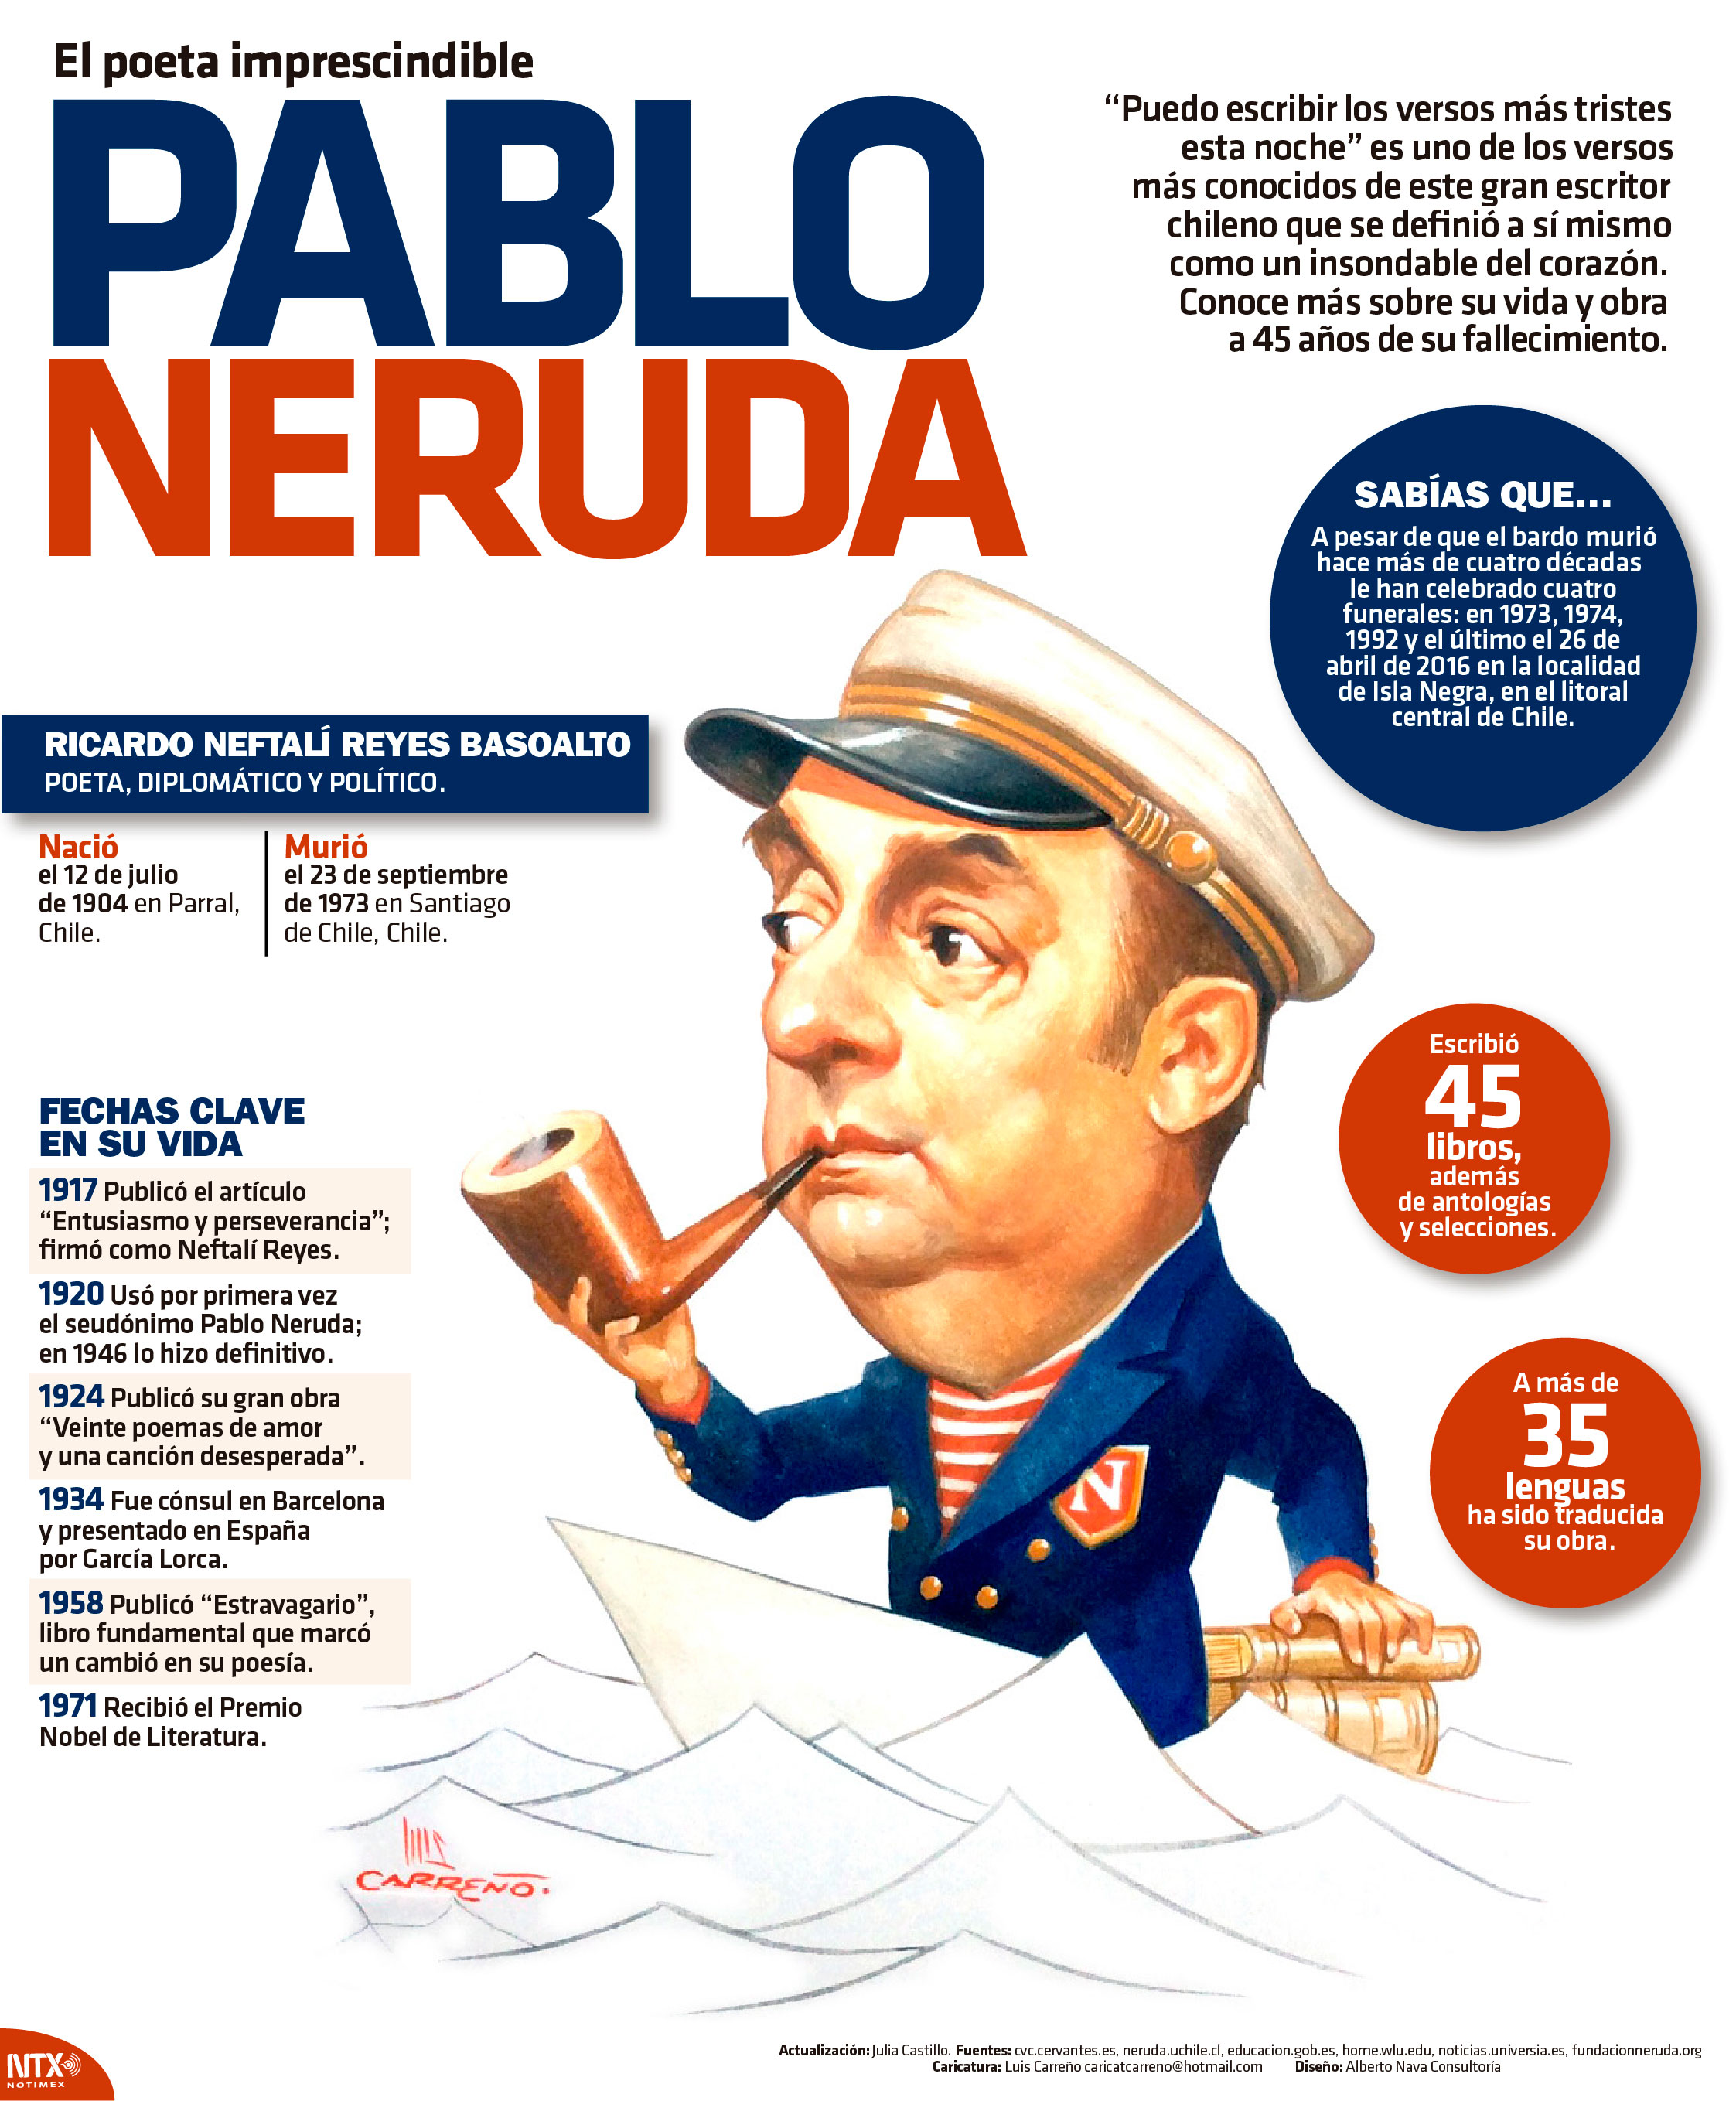 El poeta imprescindible, Pablo Neruda